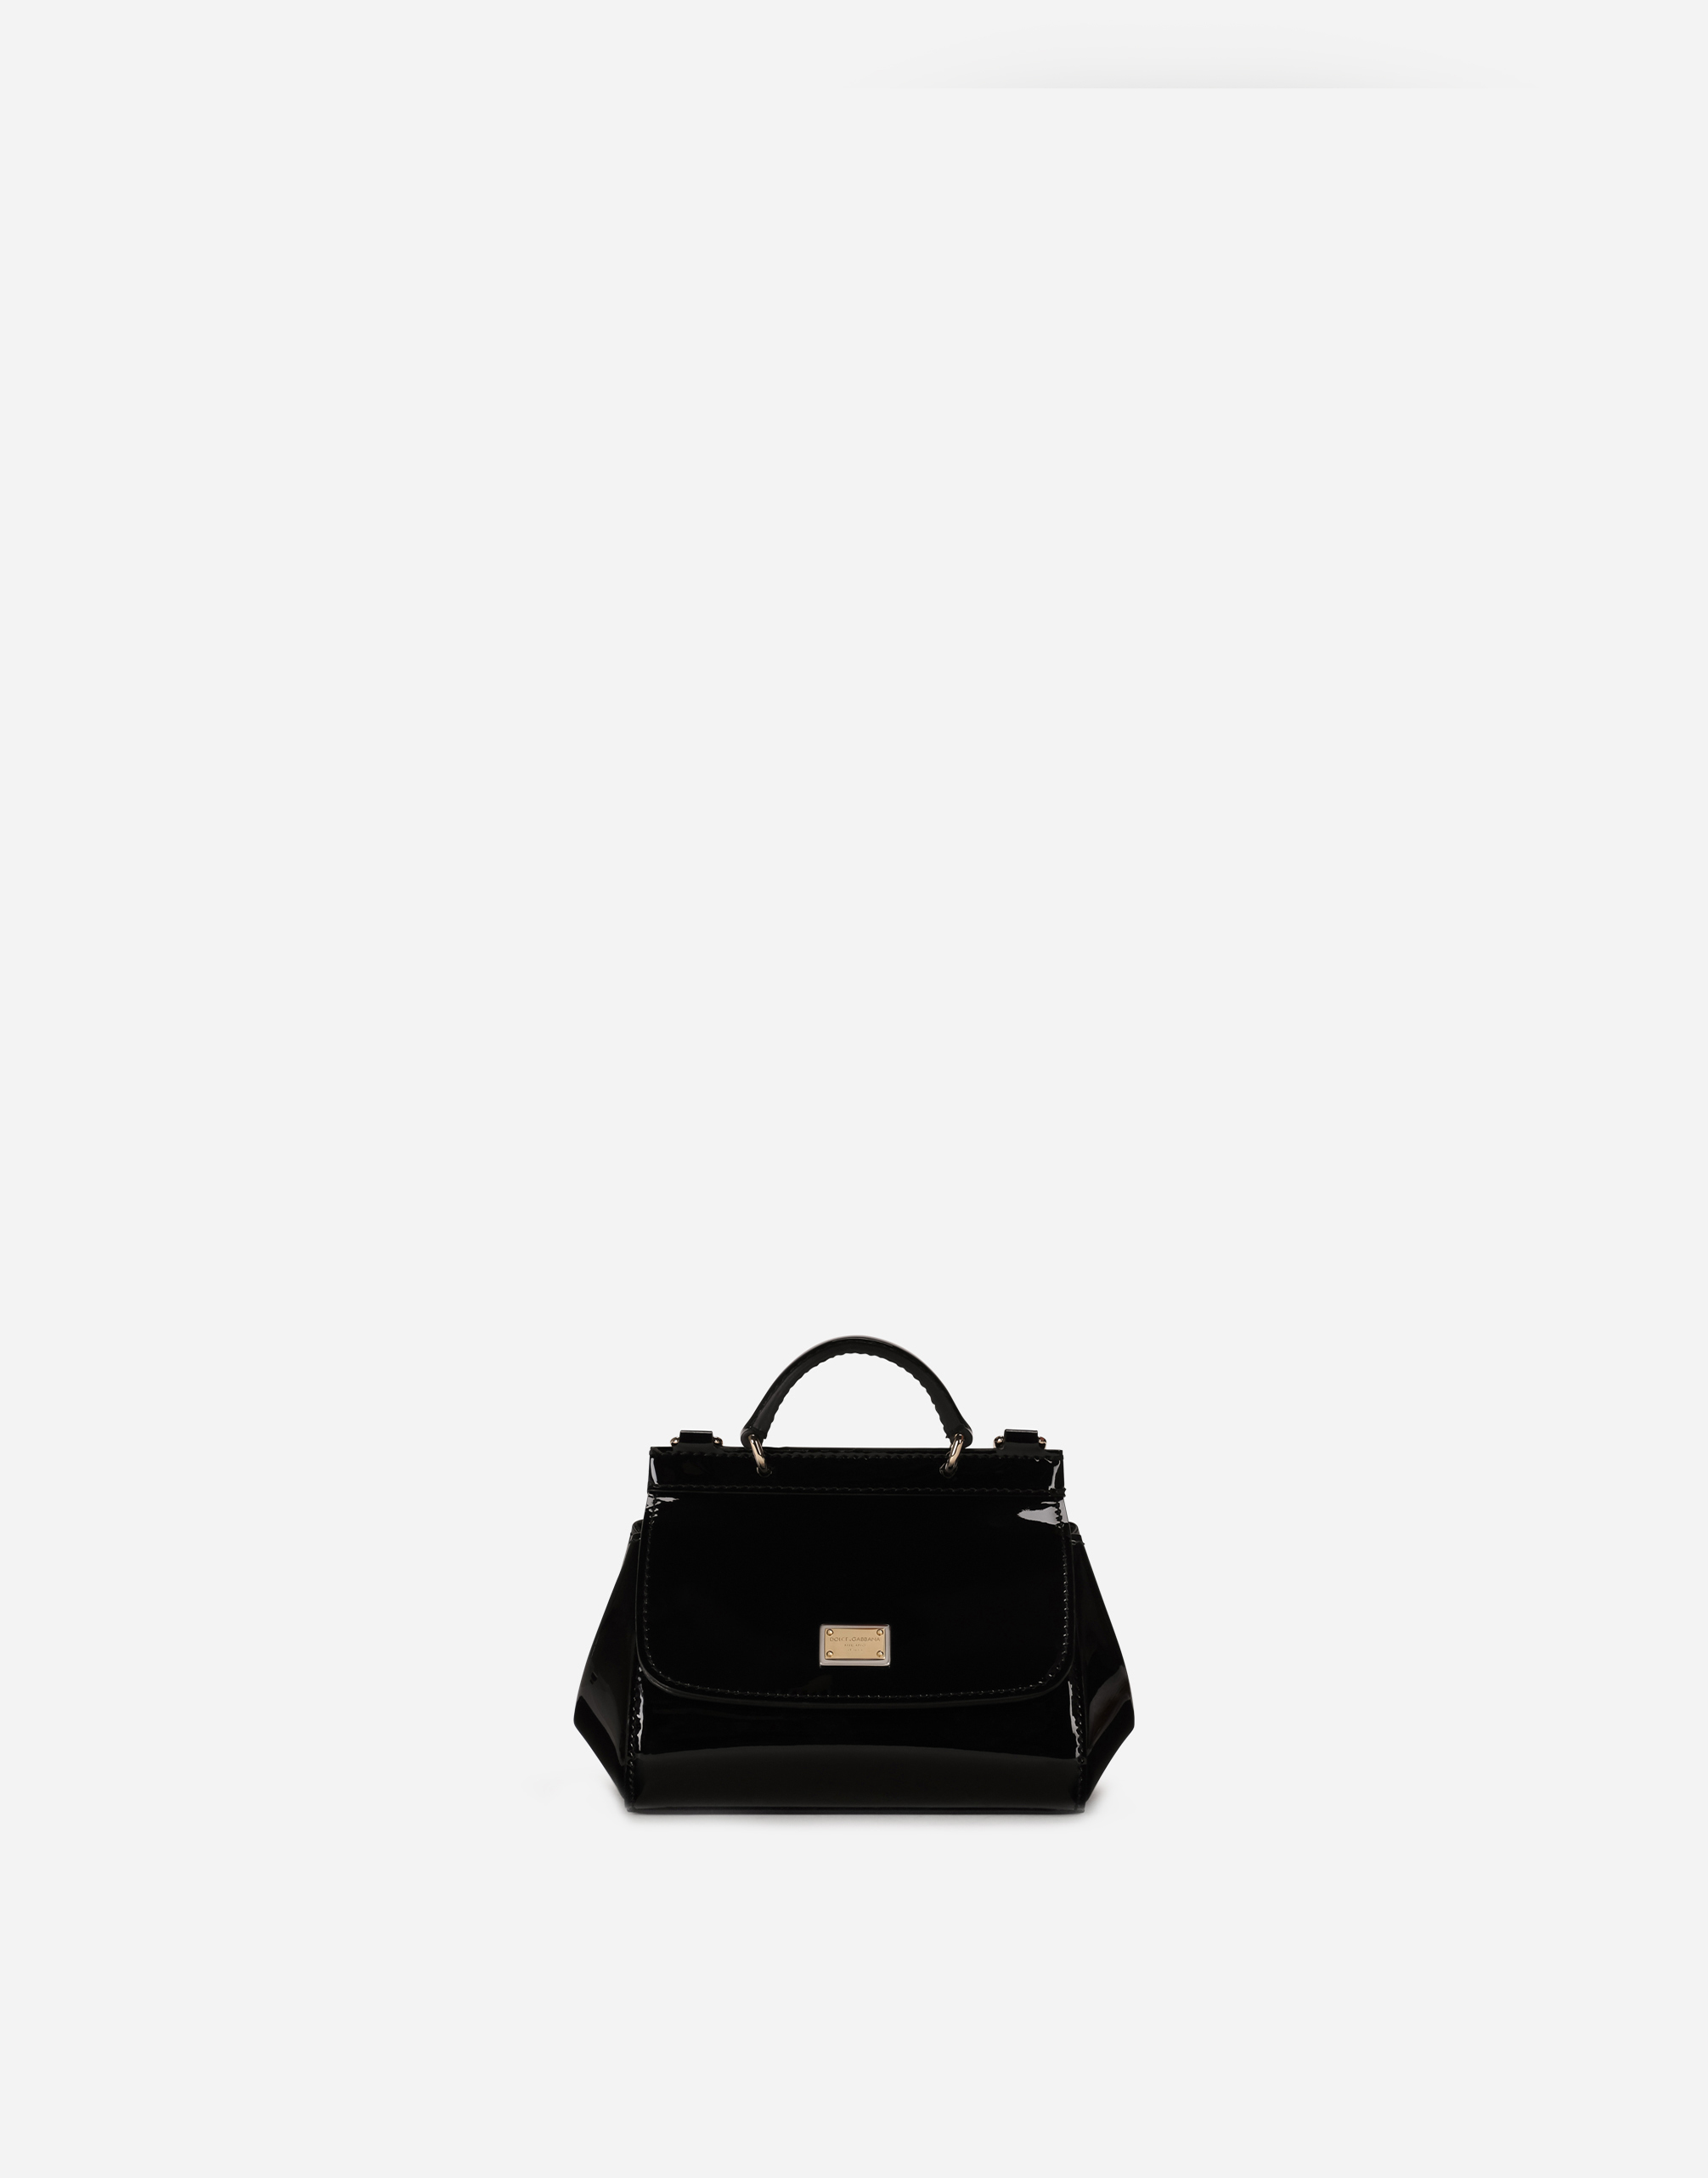 Dolce & Gabbana Kids' Patent Leather Mini Sicily Bag In Black